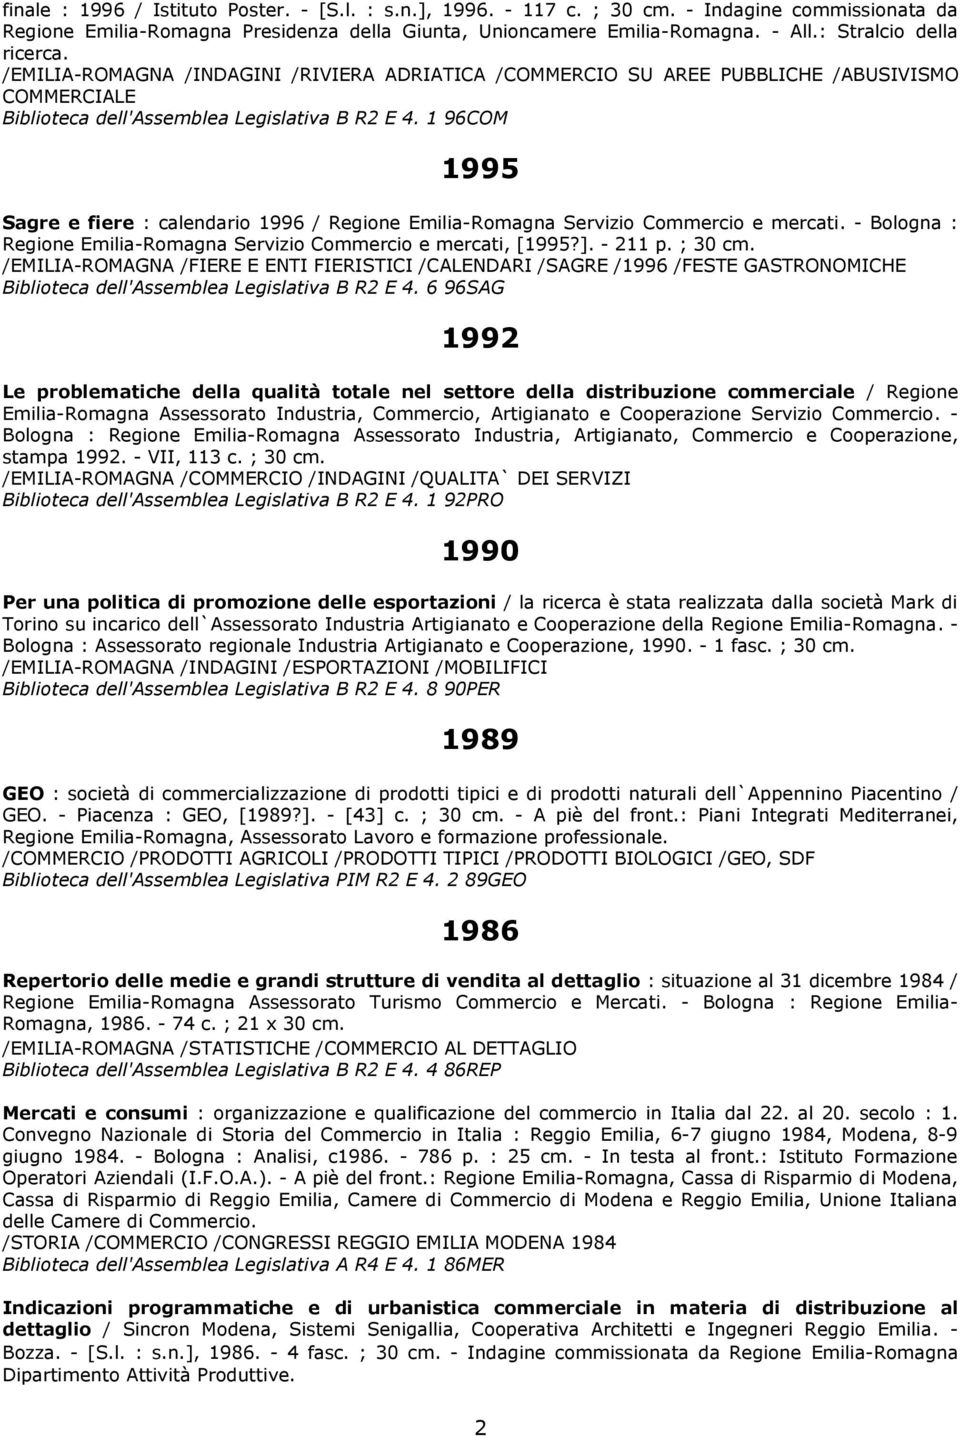 1 96COM 1995 Sagre e fiere : calendario 1996 / Regione Emilia-Romagna Servizio Commercio e mercati. - Bologna : Regione Emilia-Romagna Servizio Commercio e mercati, [1995?]. - 211 p. ; 30 cm.